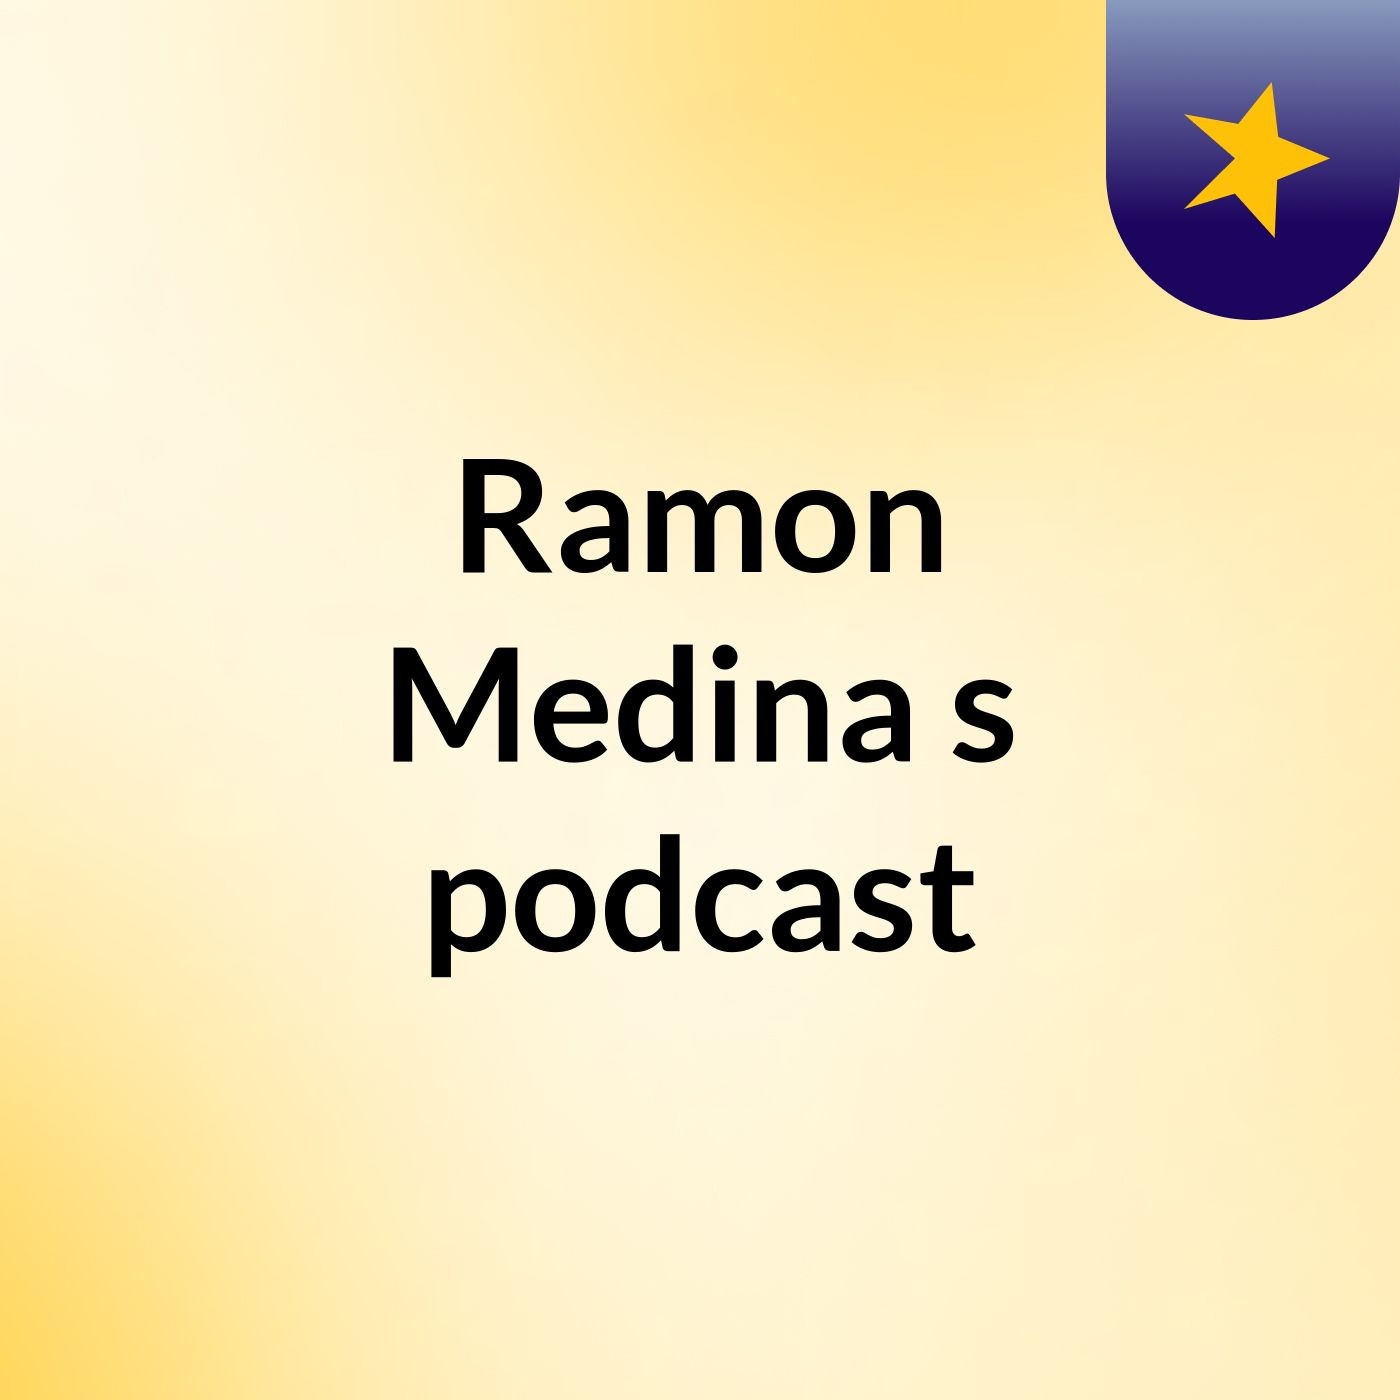 Ramon Medina's podcast